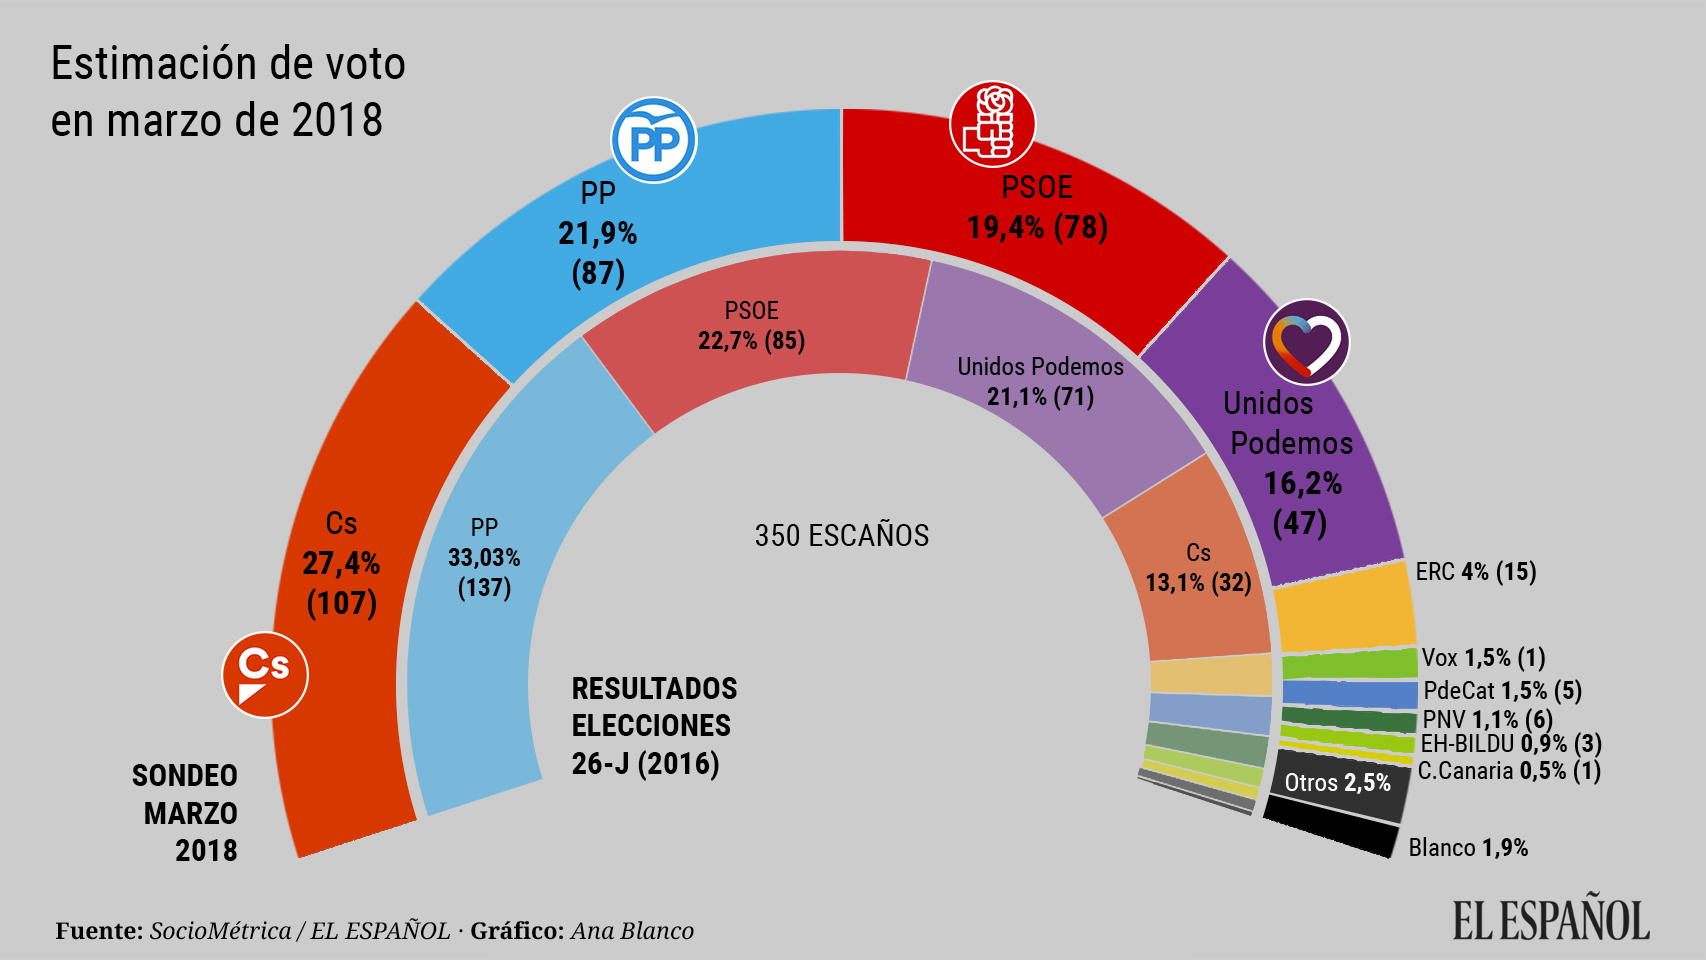 El vuelco al centro se acentúa: Cs ya saca 20 escaños al PP y 30 al PSOE